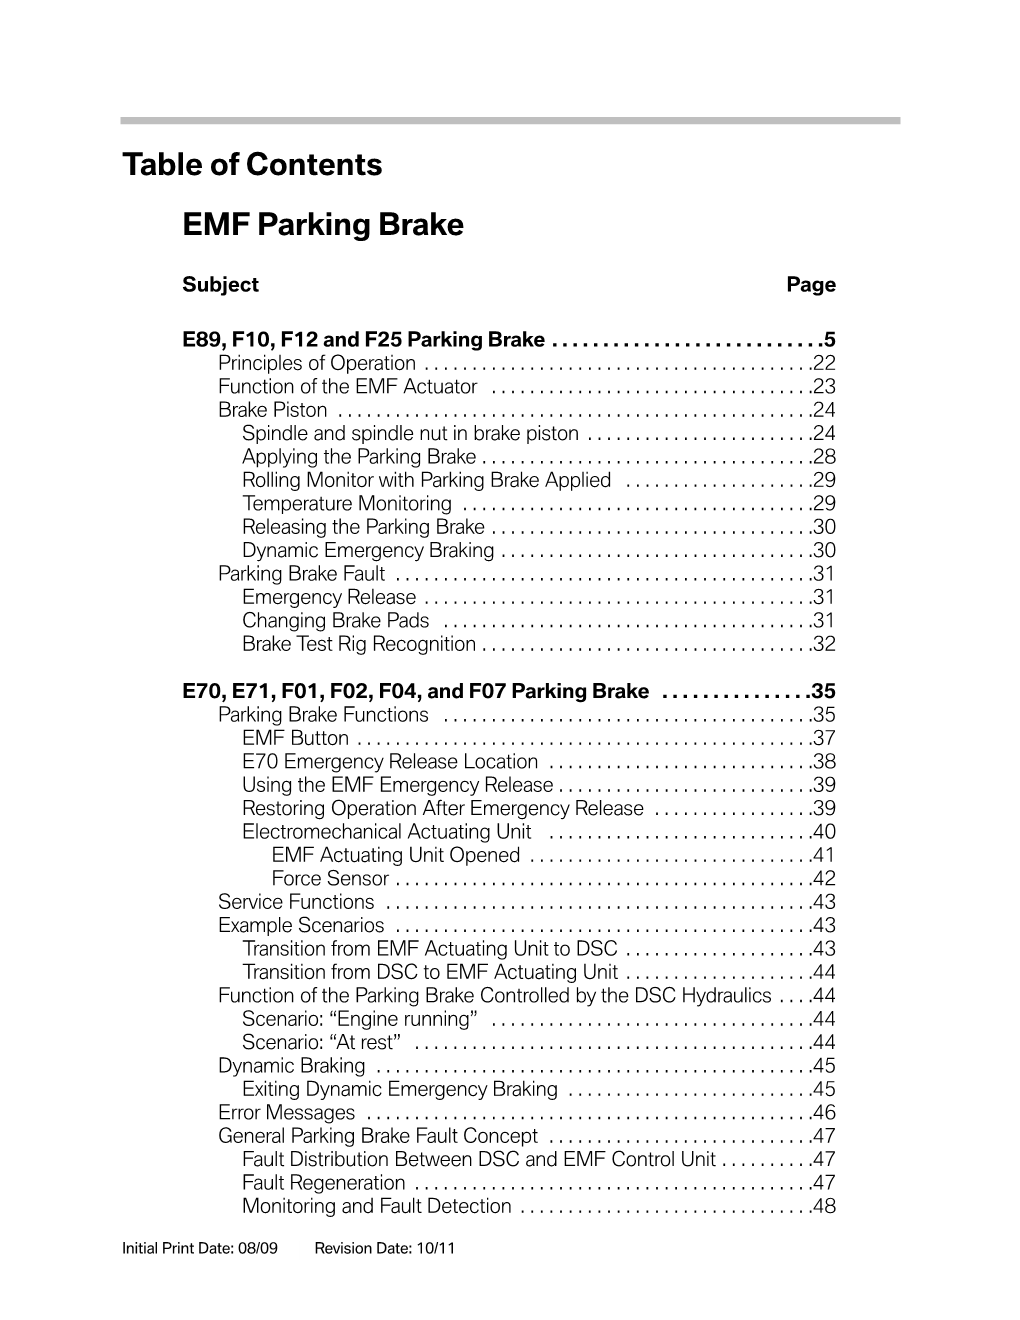 02 EMF Parking Brake.Pdf